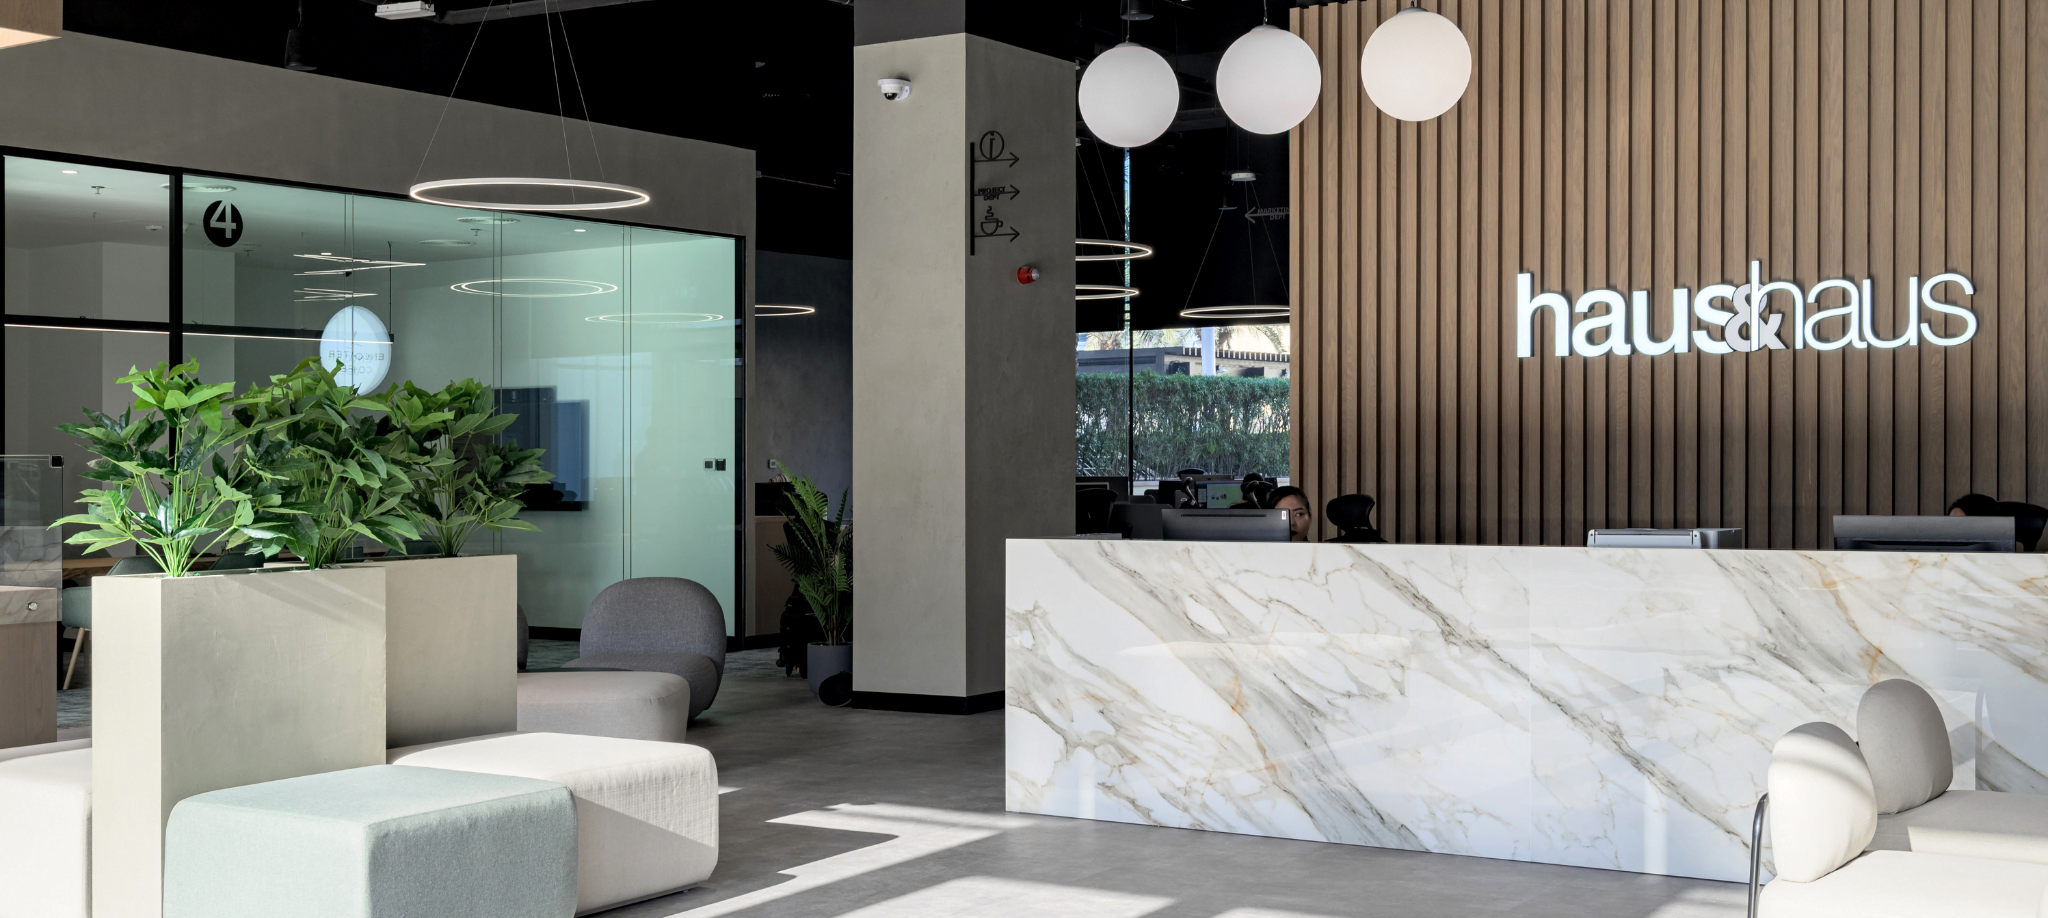 Office Reception Interior Design in UAE